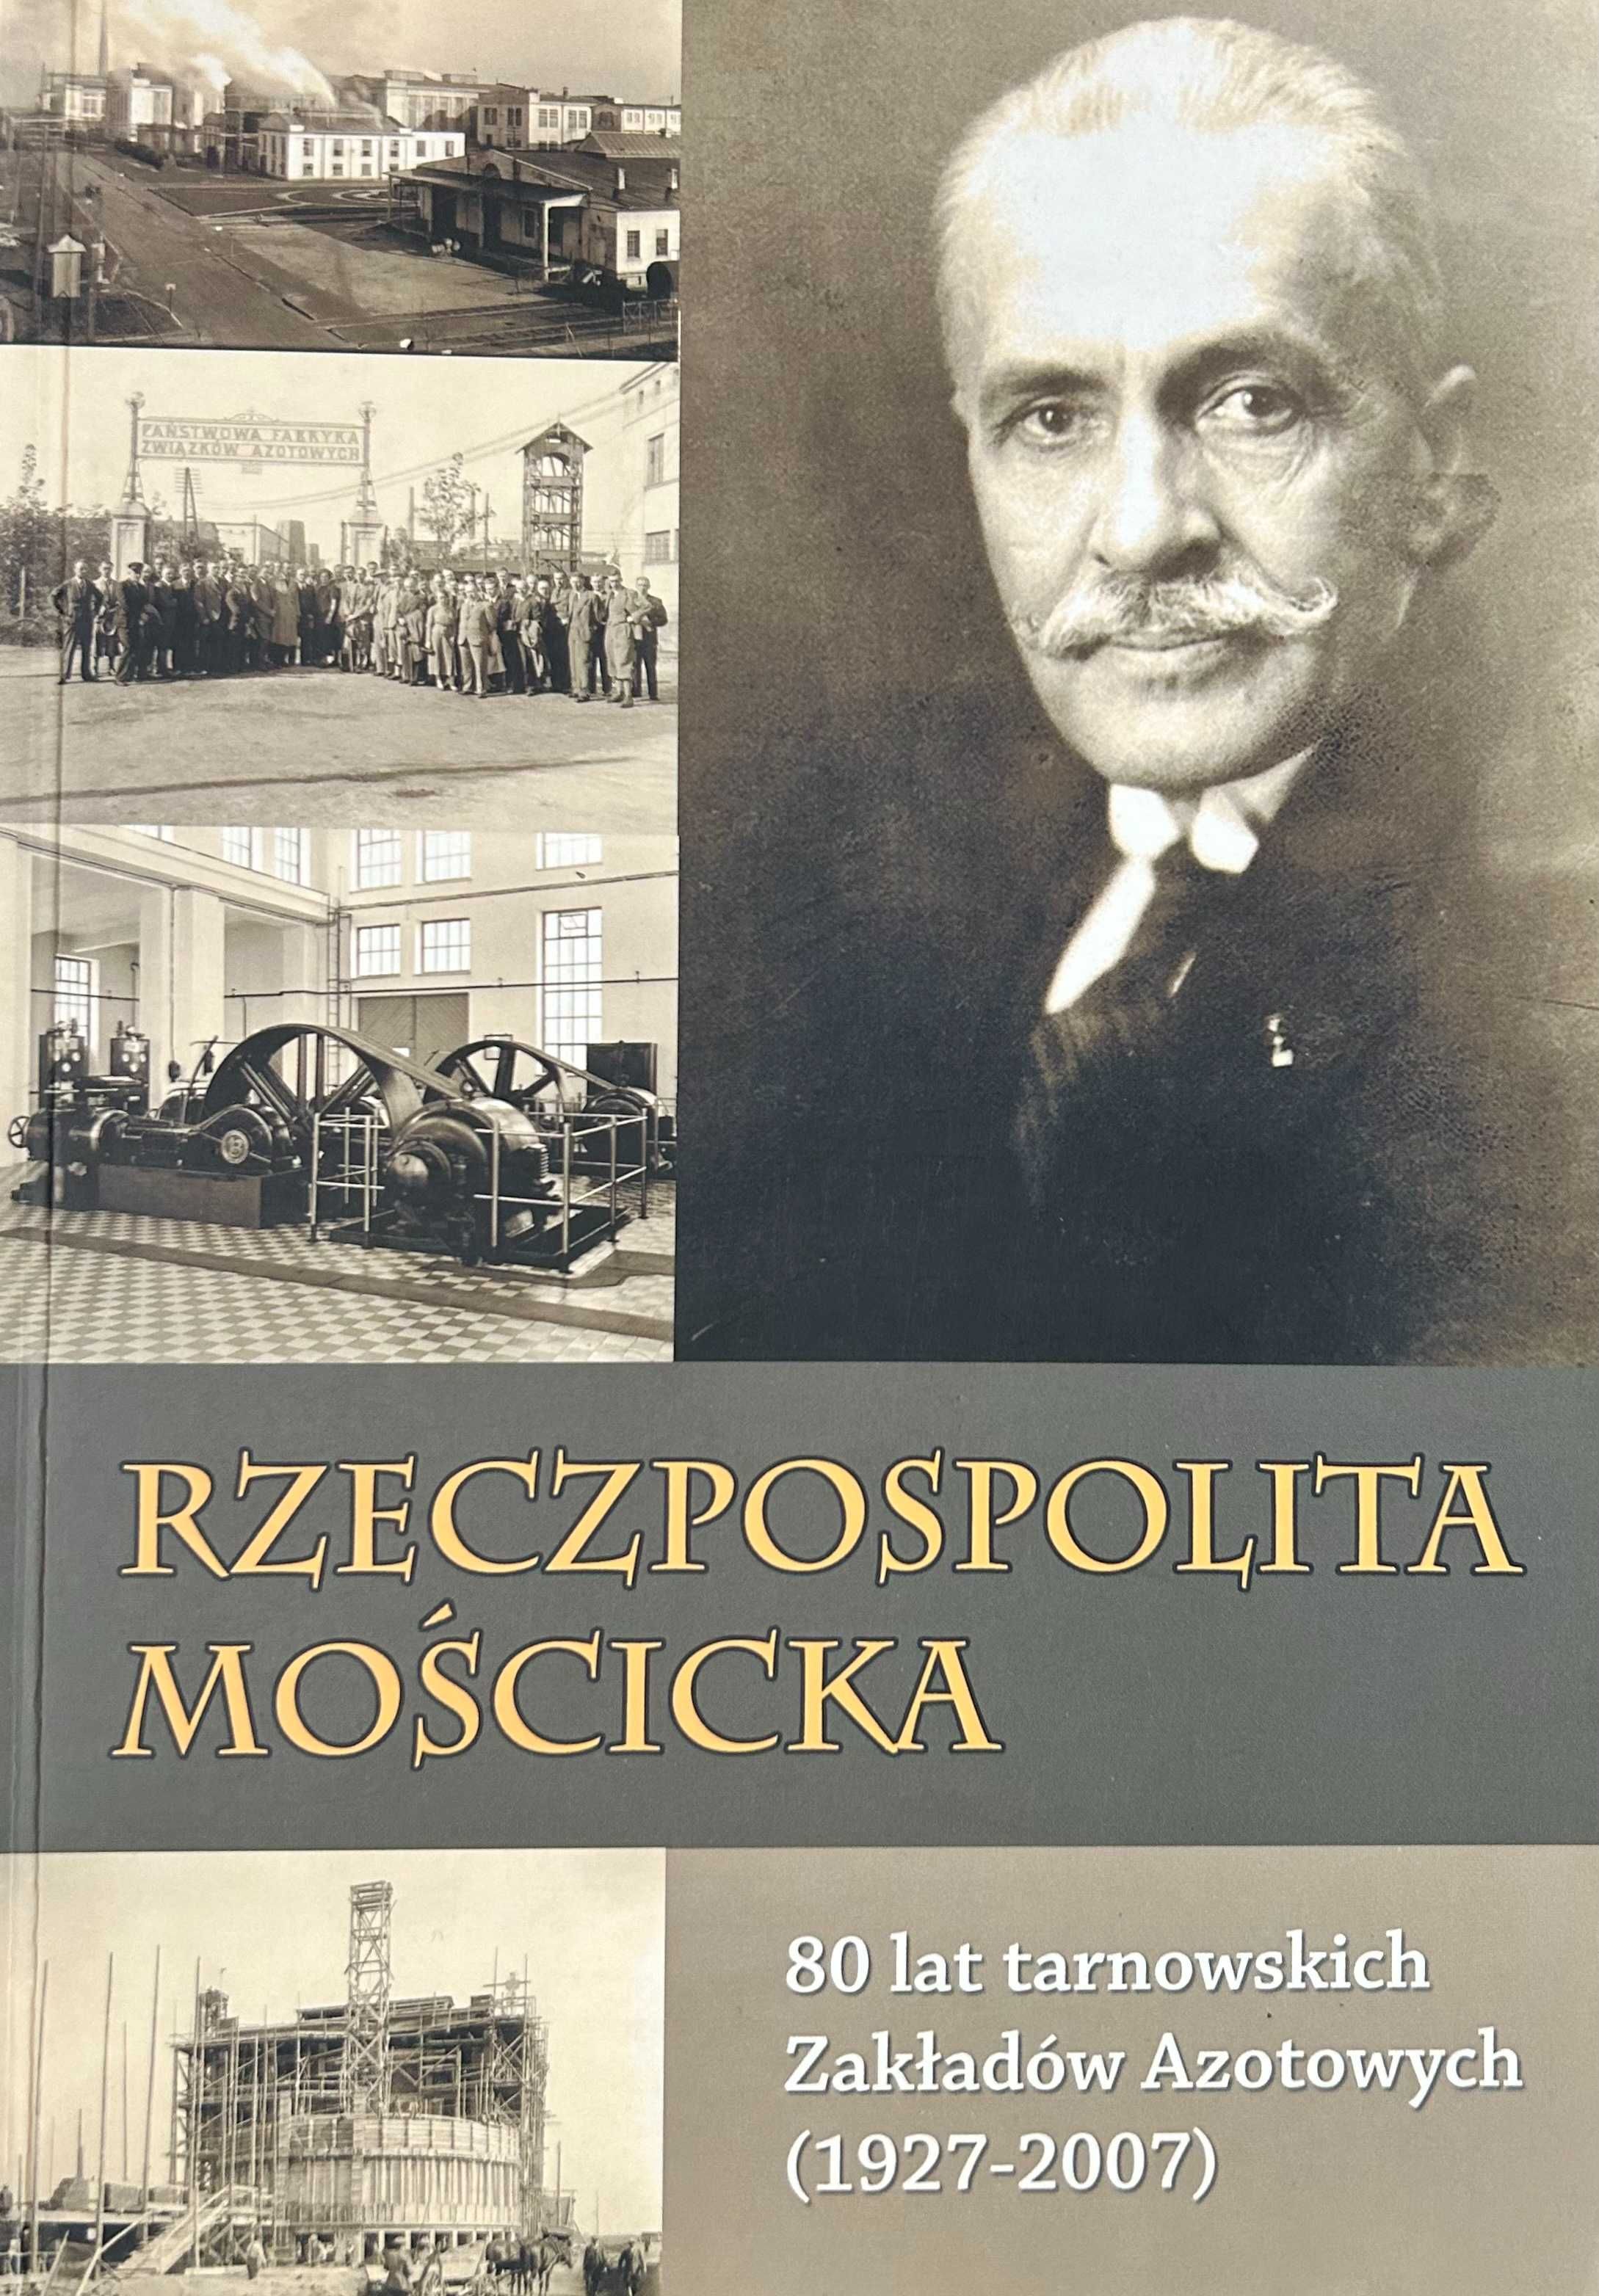 Rzeczpospolita Mościcka | 80 lat tarnowskich Zakładów Azotowych